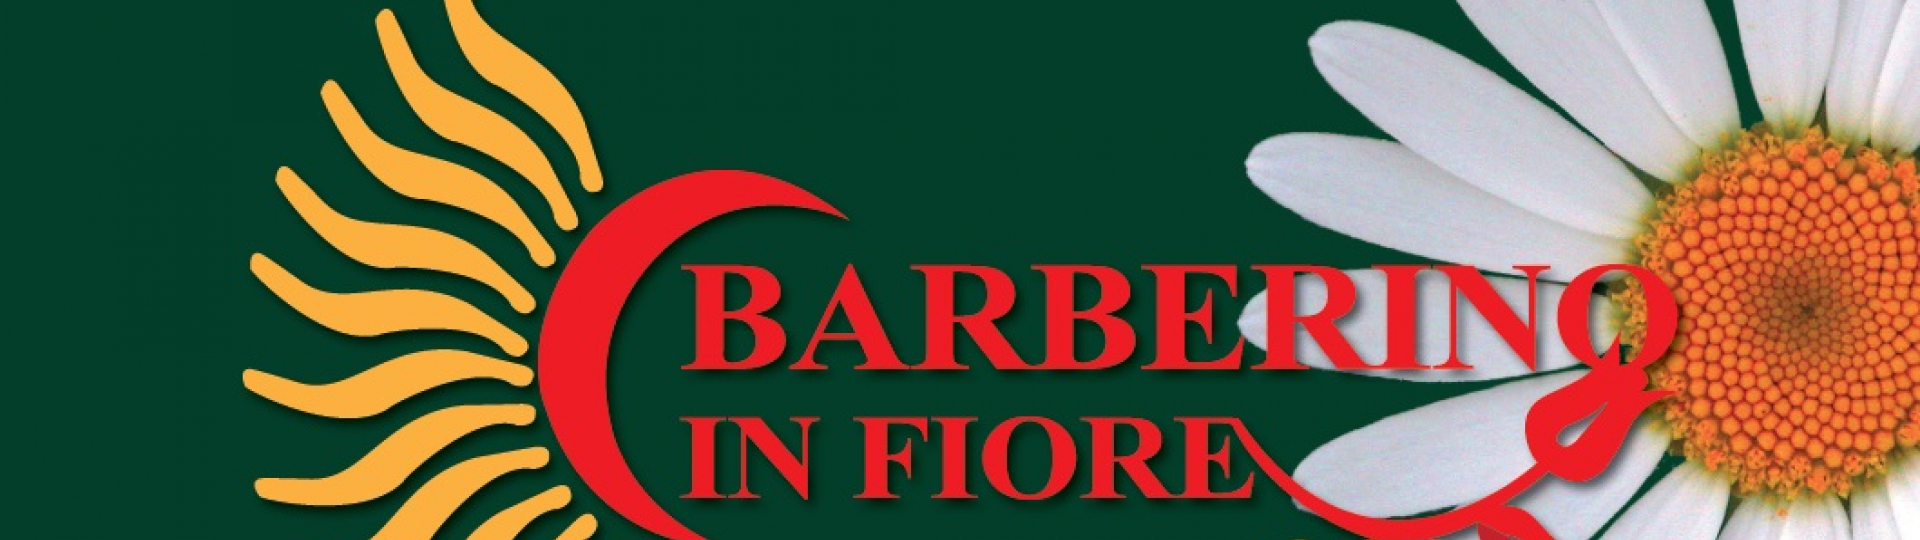 logo barberino in fiore